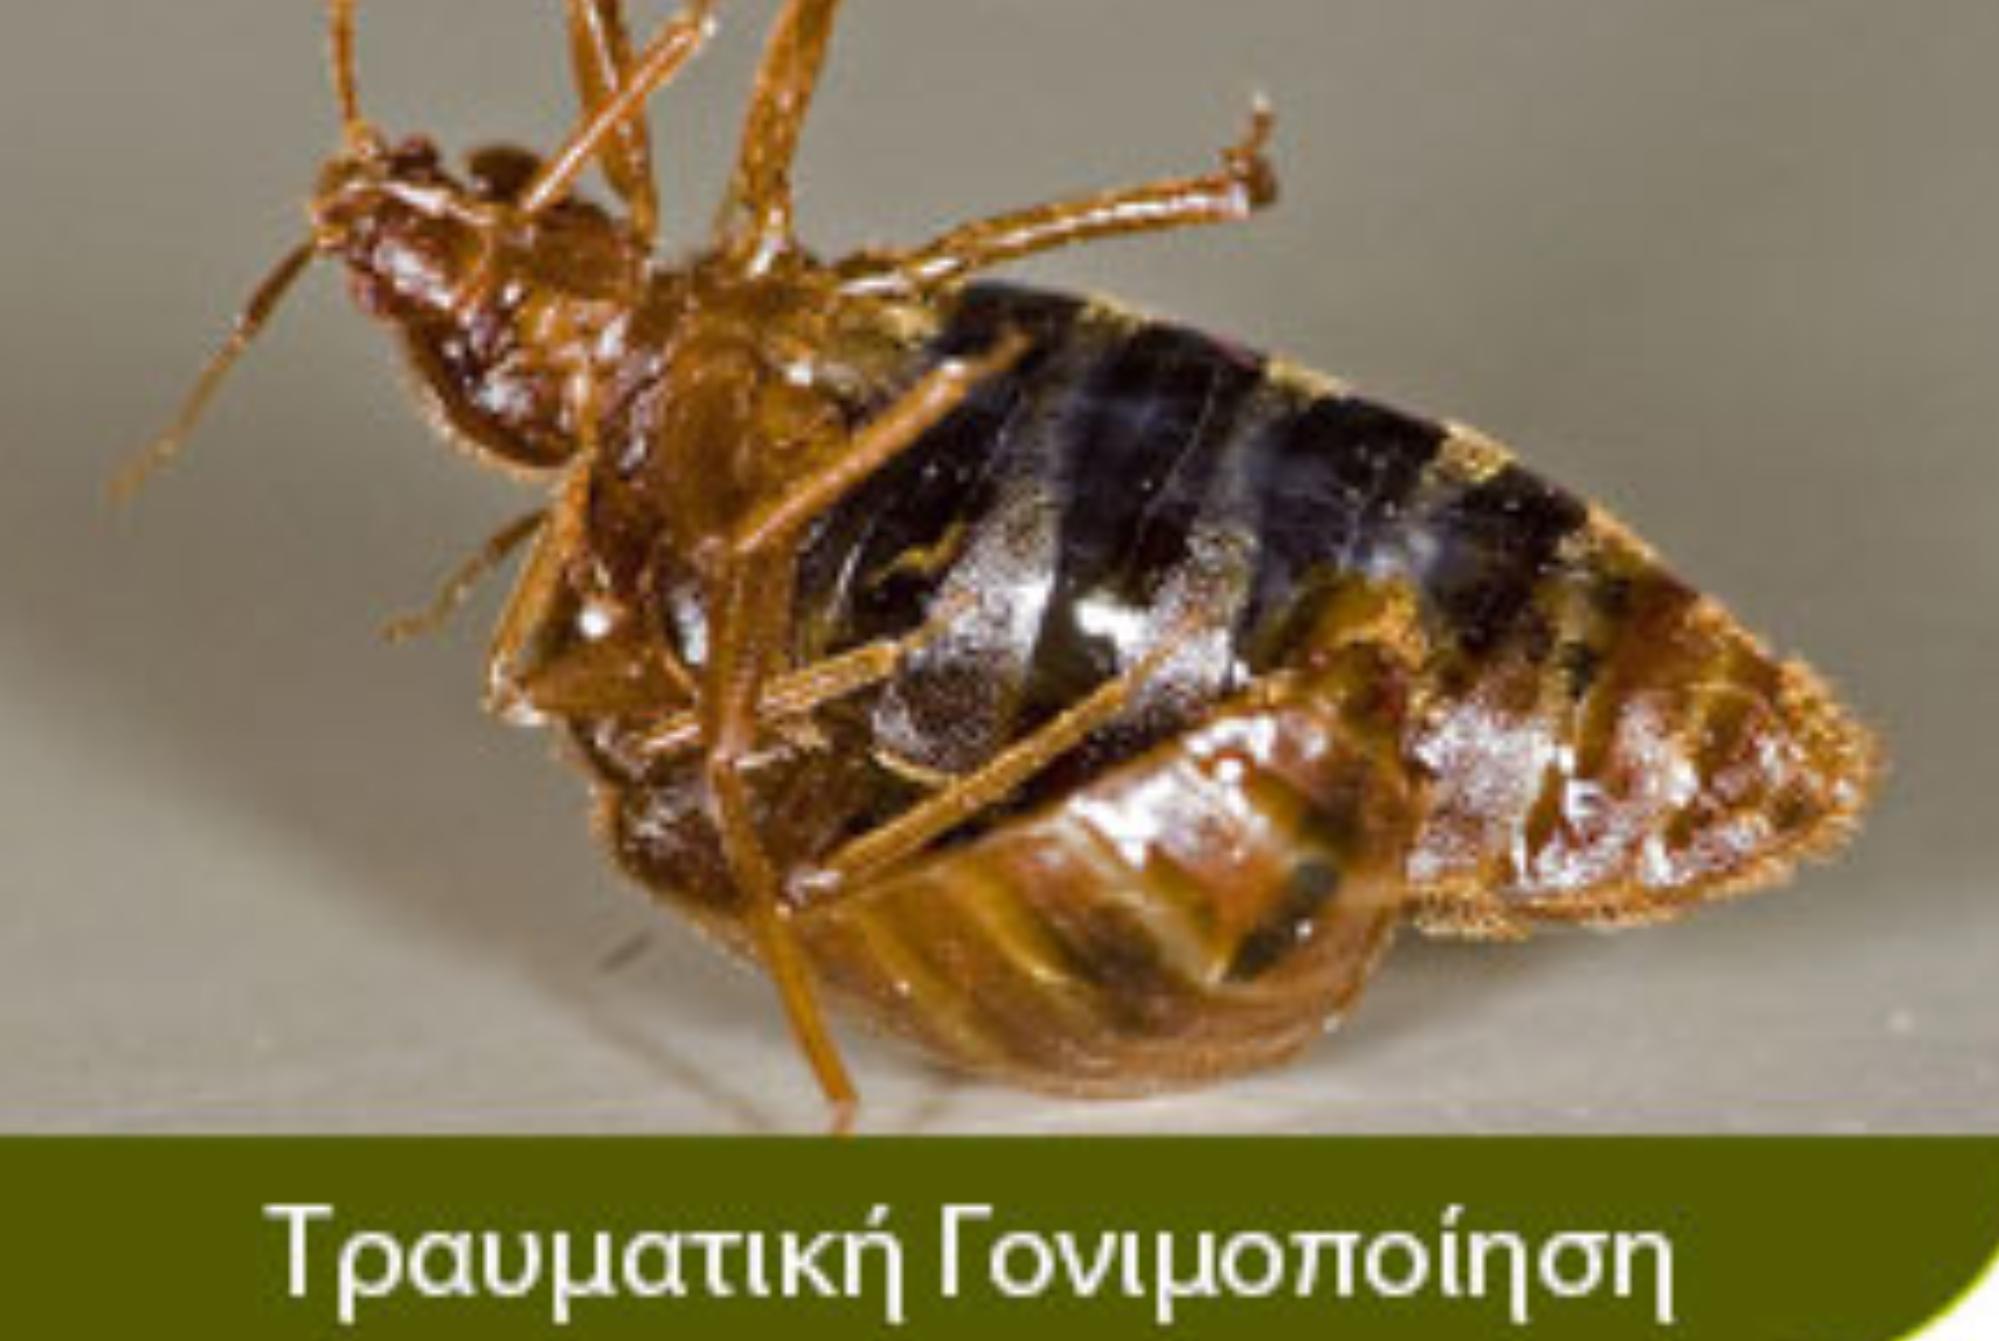 Κοριός το έντομο ταξιδευτής: Τα χαρακτηριστικά η αντιμετώπιση οι ασθένειες και η καταπολέμηση τους